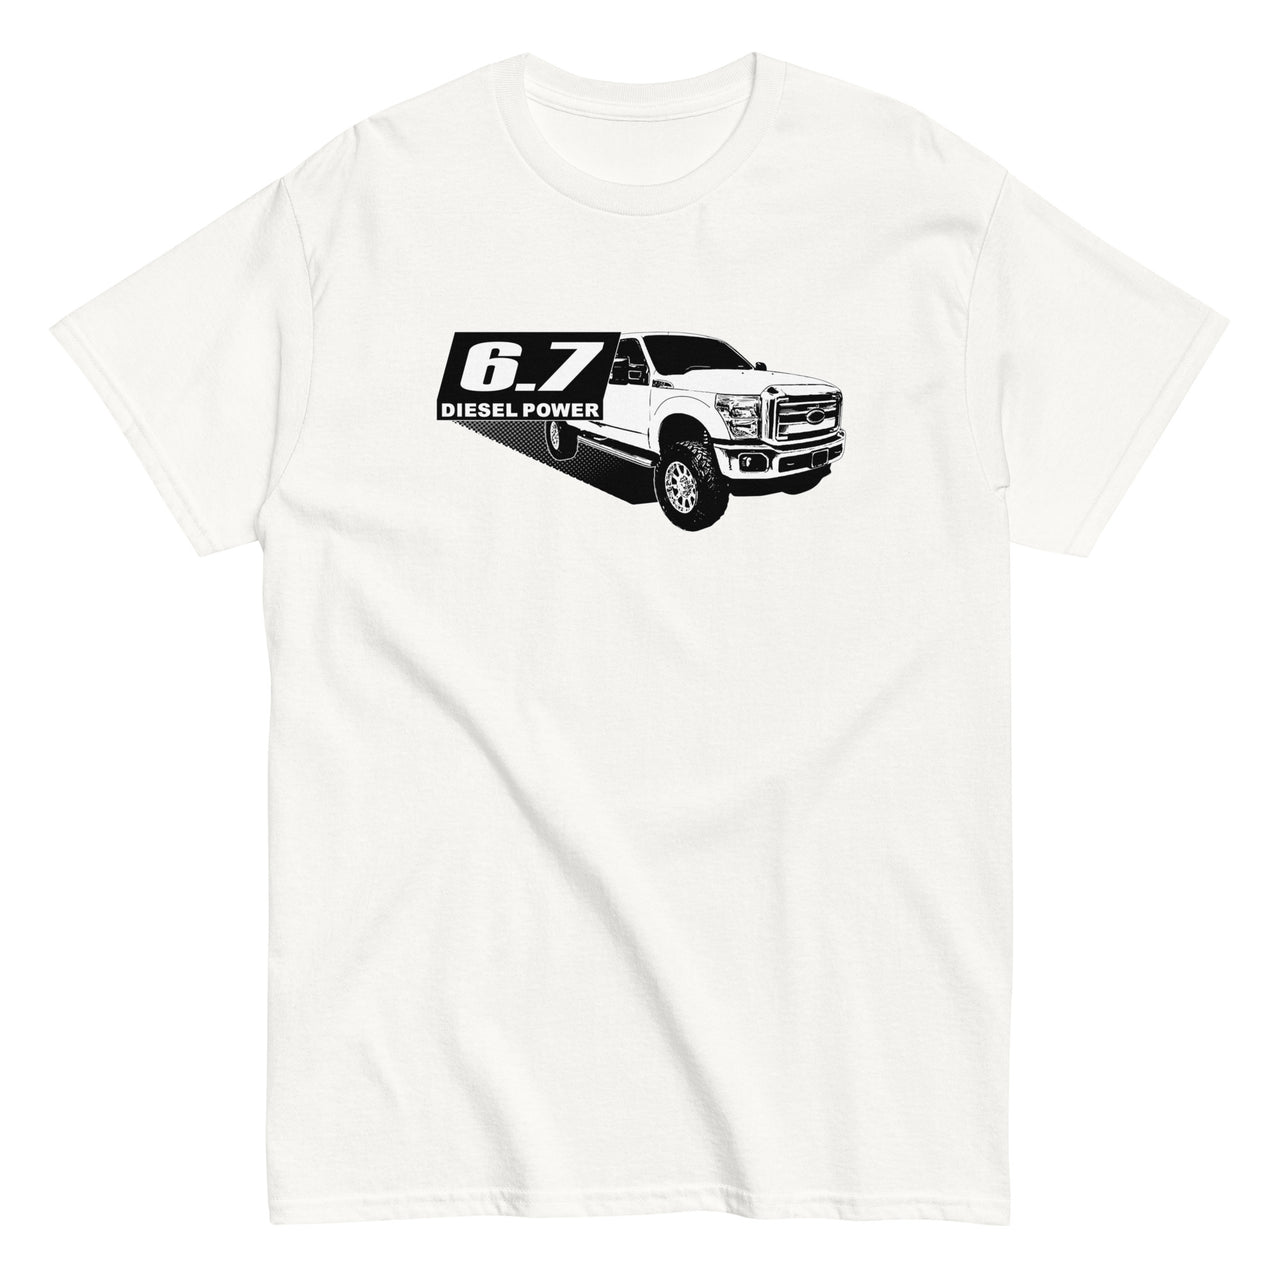 6.7 Power Stroke Truck T-shirt in white